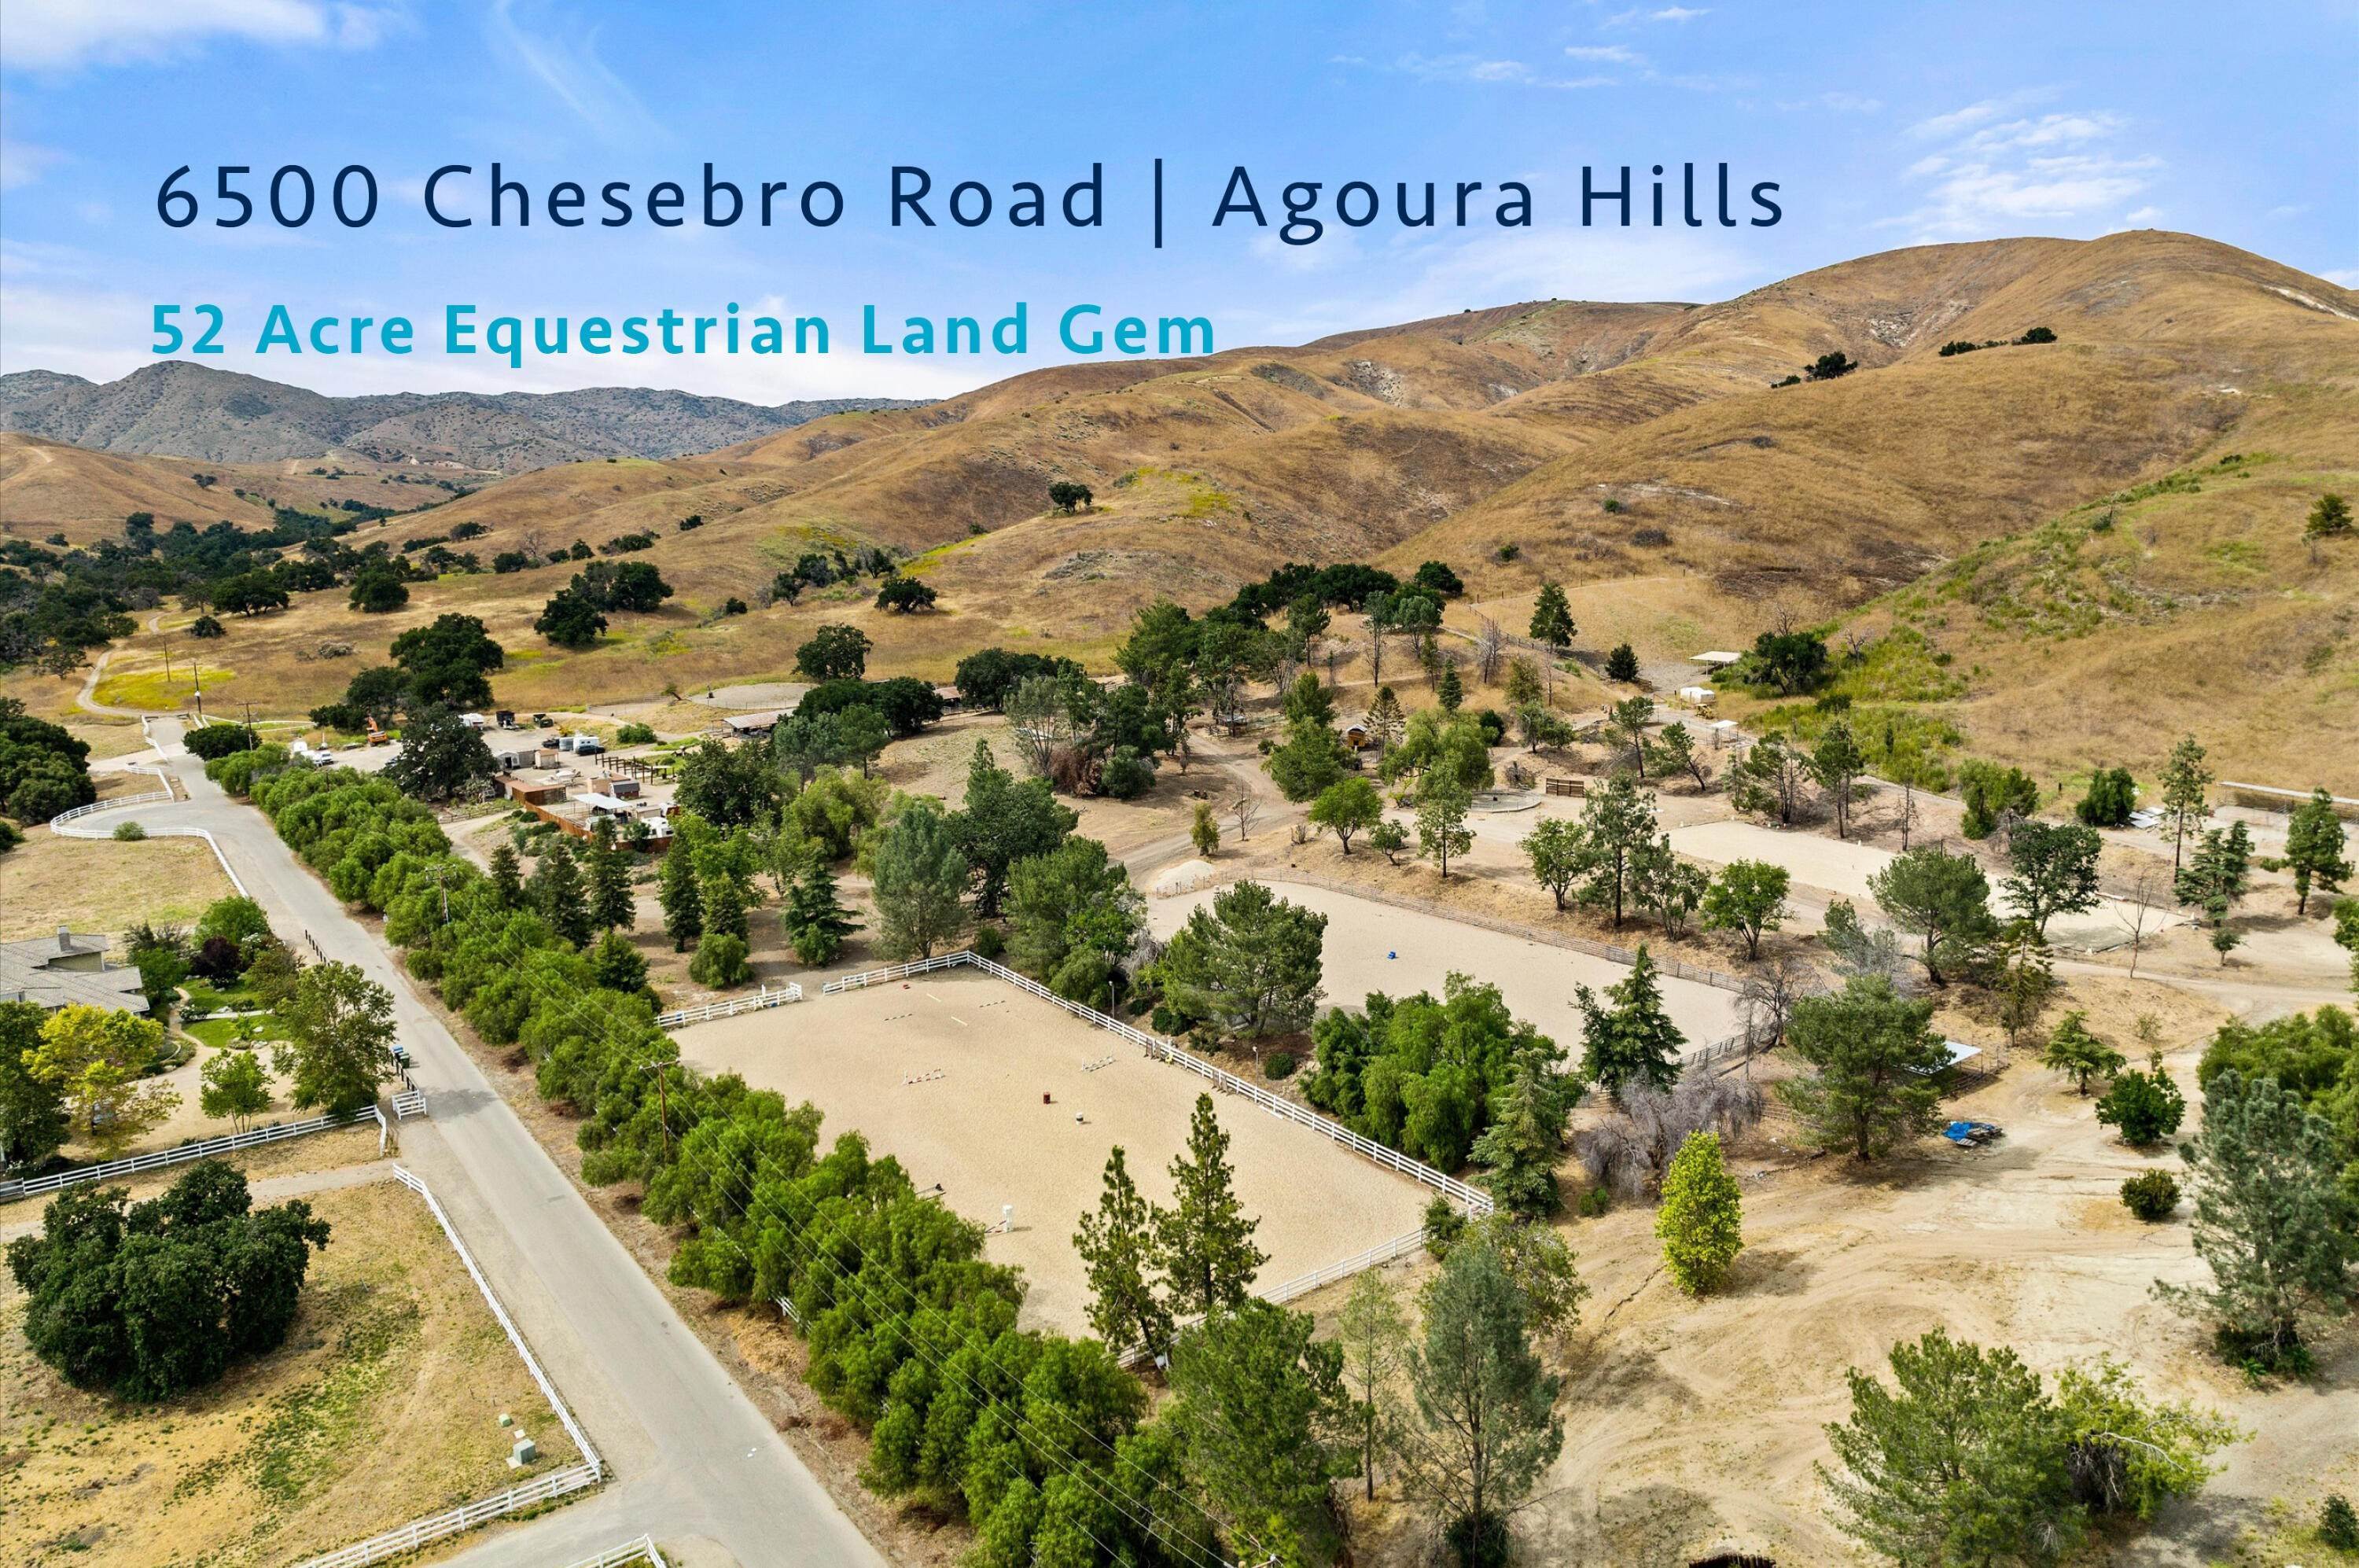 地段/土地 为 销售 在 6500 Chesebro Road 阿古拉山, 加利福尼亚州 91301 美国